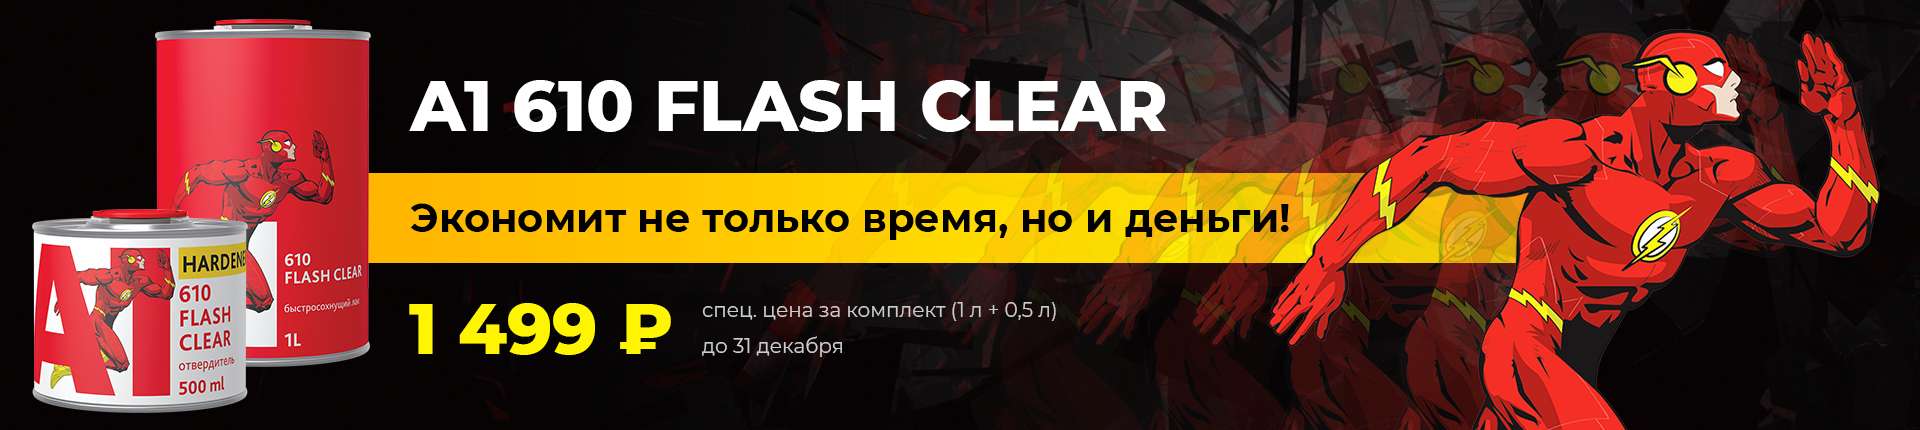 Акция! Экономим время и деньги: экспресс-лак А1 610 Flash Clear всего за 1499 рублей!